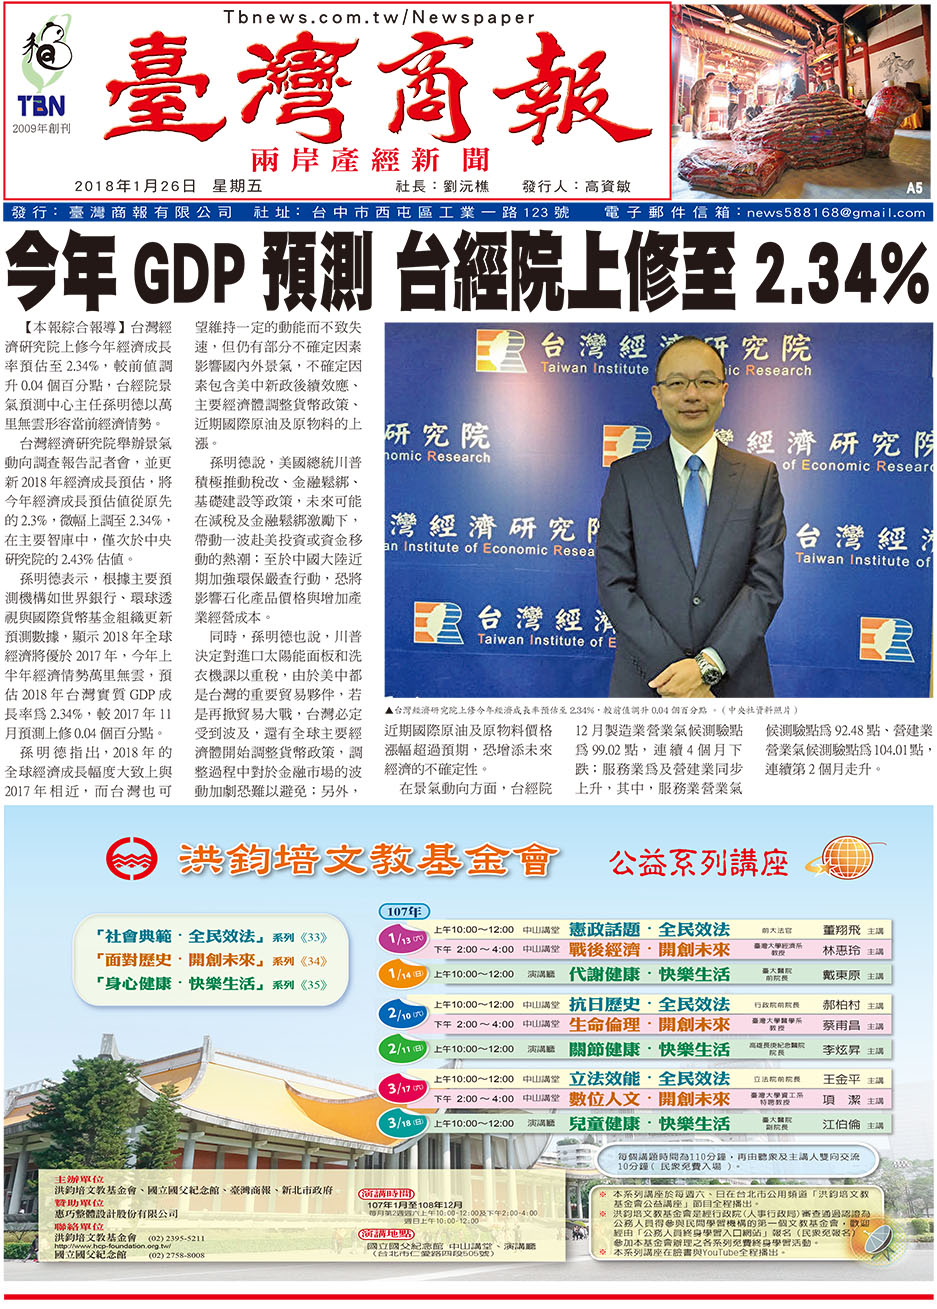 今年 GDP 預測 台經院上修至 2.34%